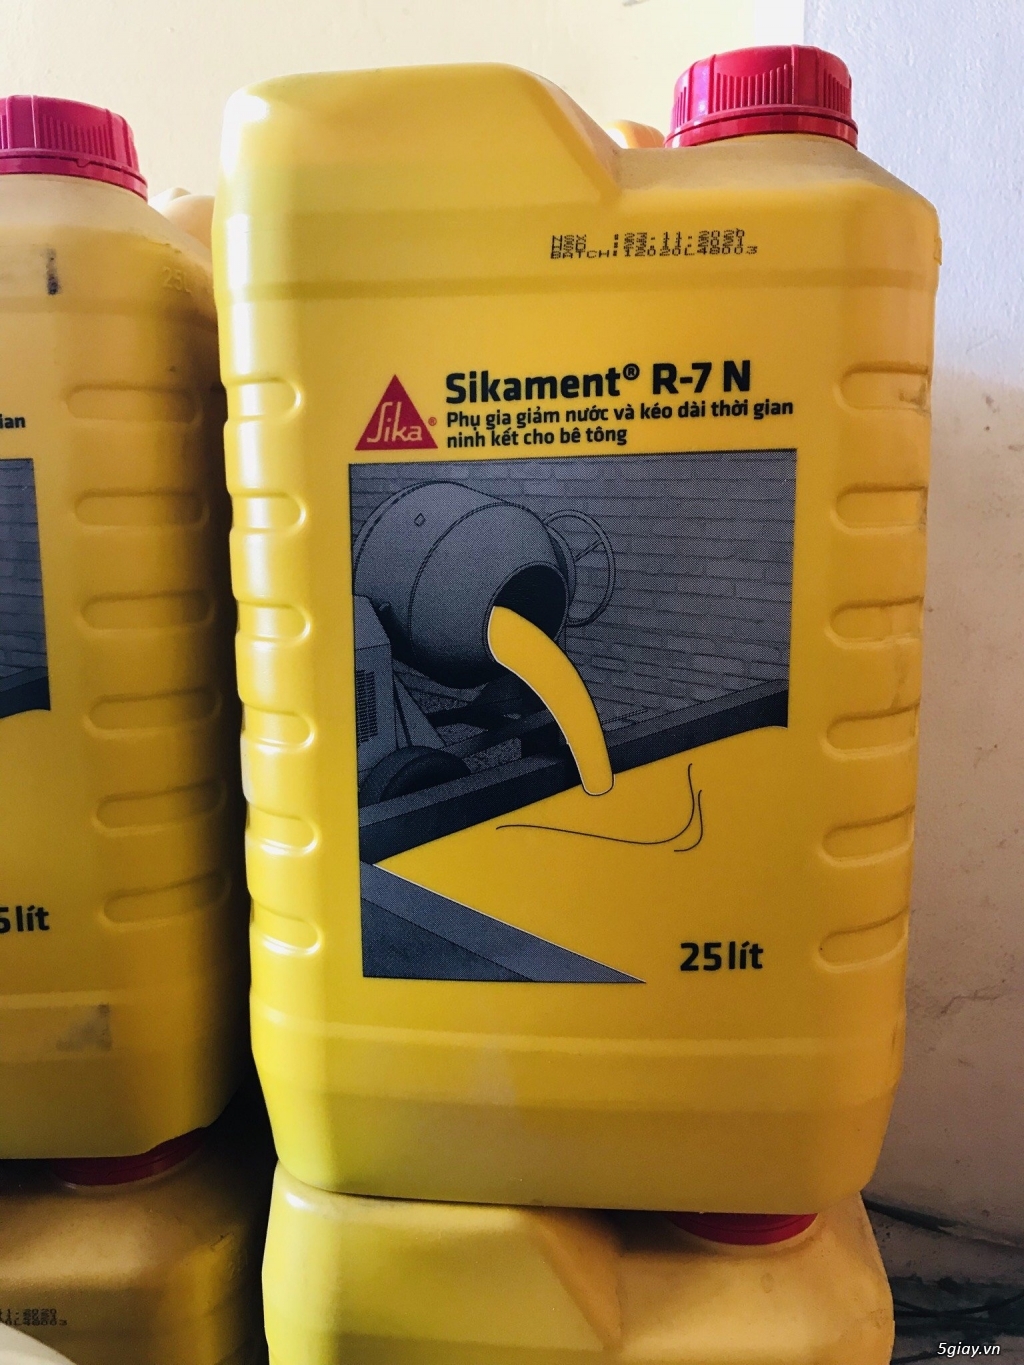 Sikament-R7N - Phụ gia giảm nước và kéo dài thời gian ninh kết bê tông